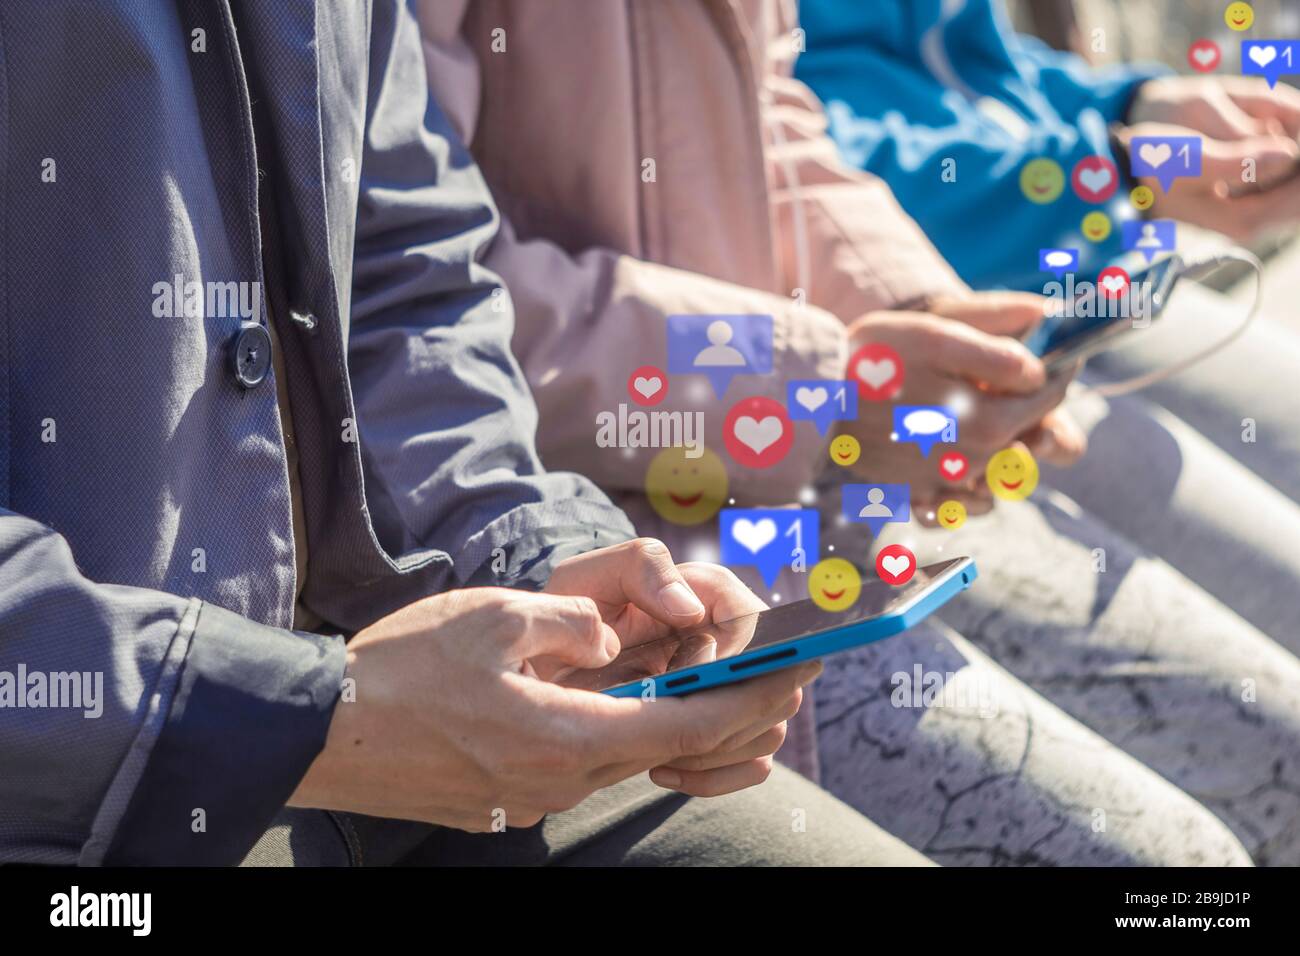 Les utilisateurs utilisent un réseau social avec des icônes de notification sur les smartphones. Les adolescents regardaient des vidéos en direct sur leur téléphone mobile. Banque D'Images